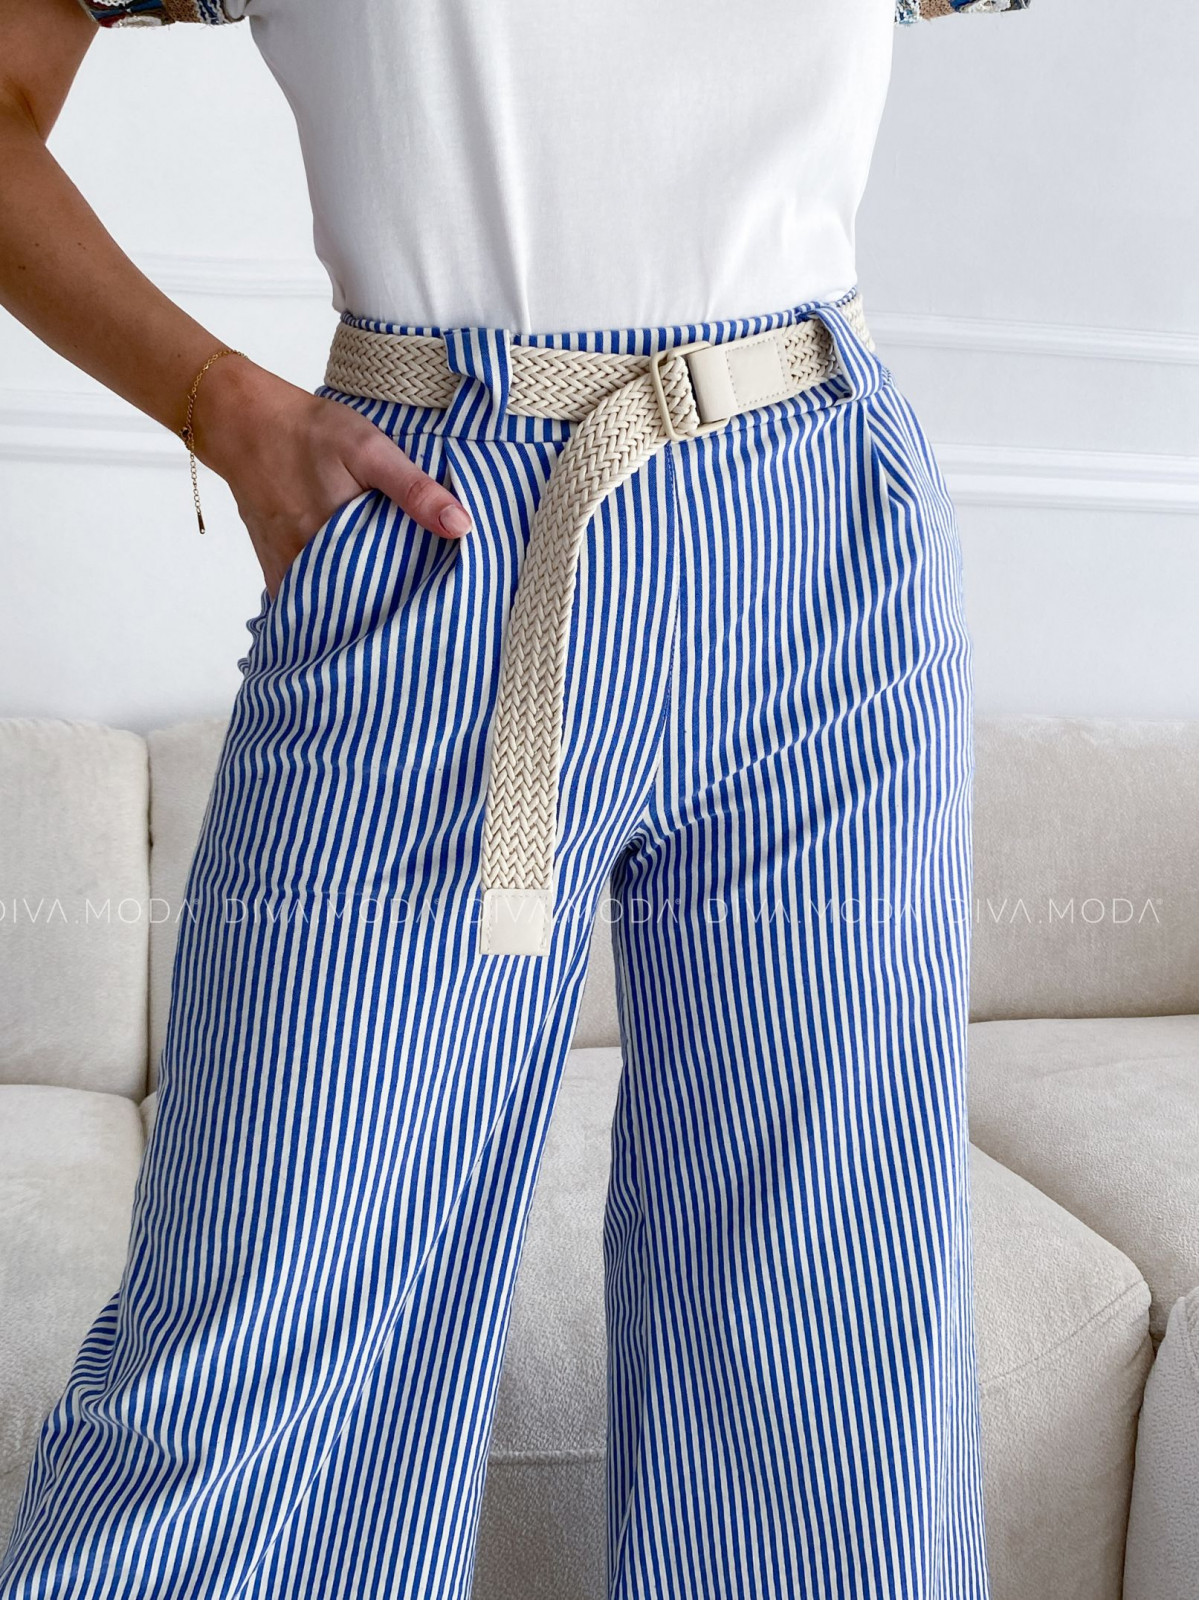 Bavlněné zvonové kalhoty strips tmavě modré P 86